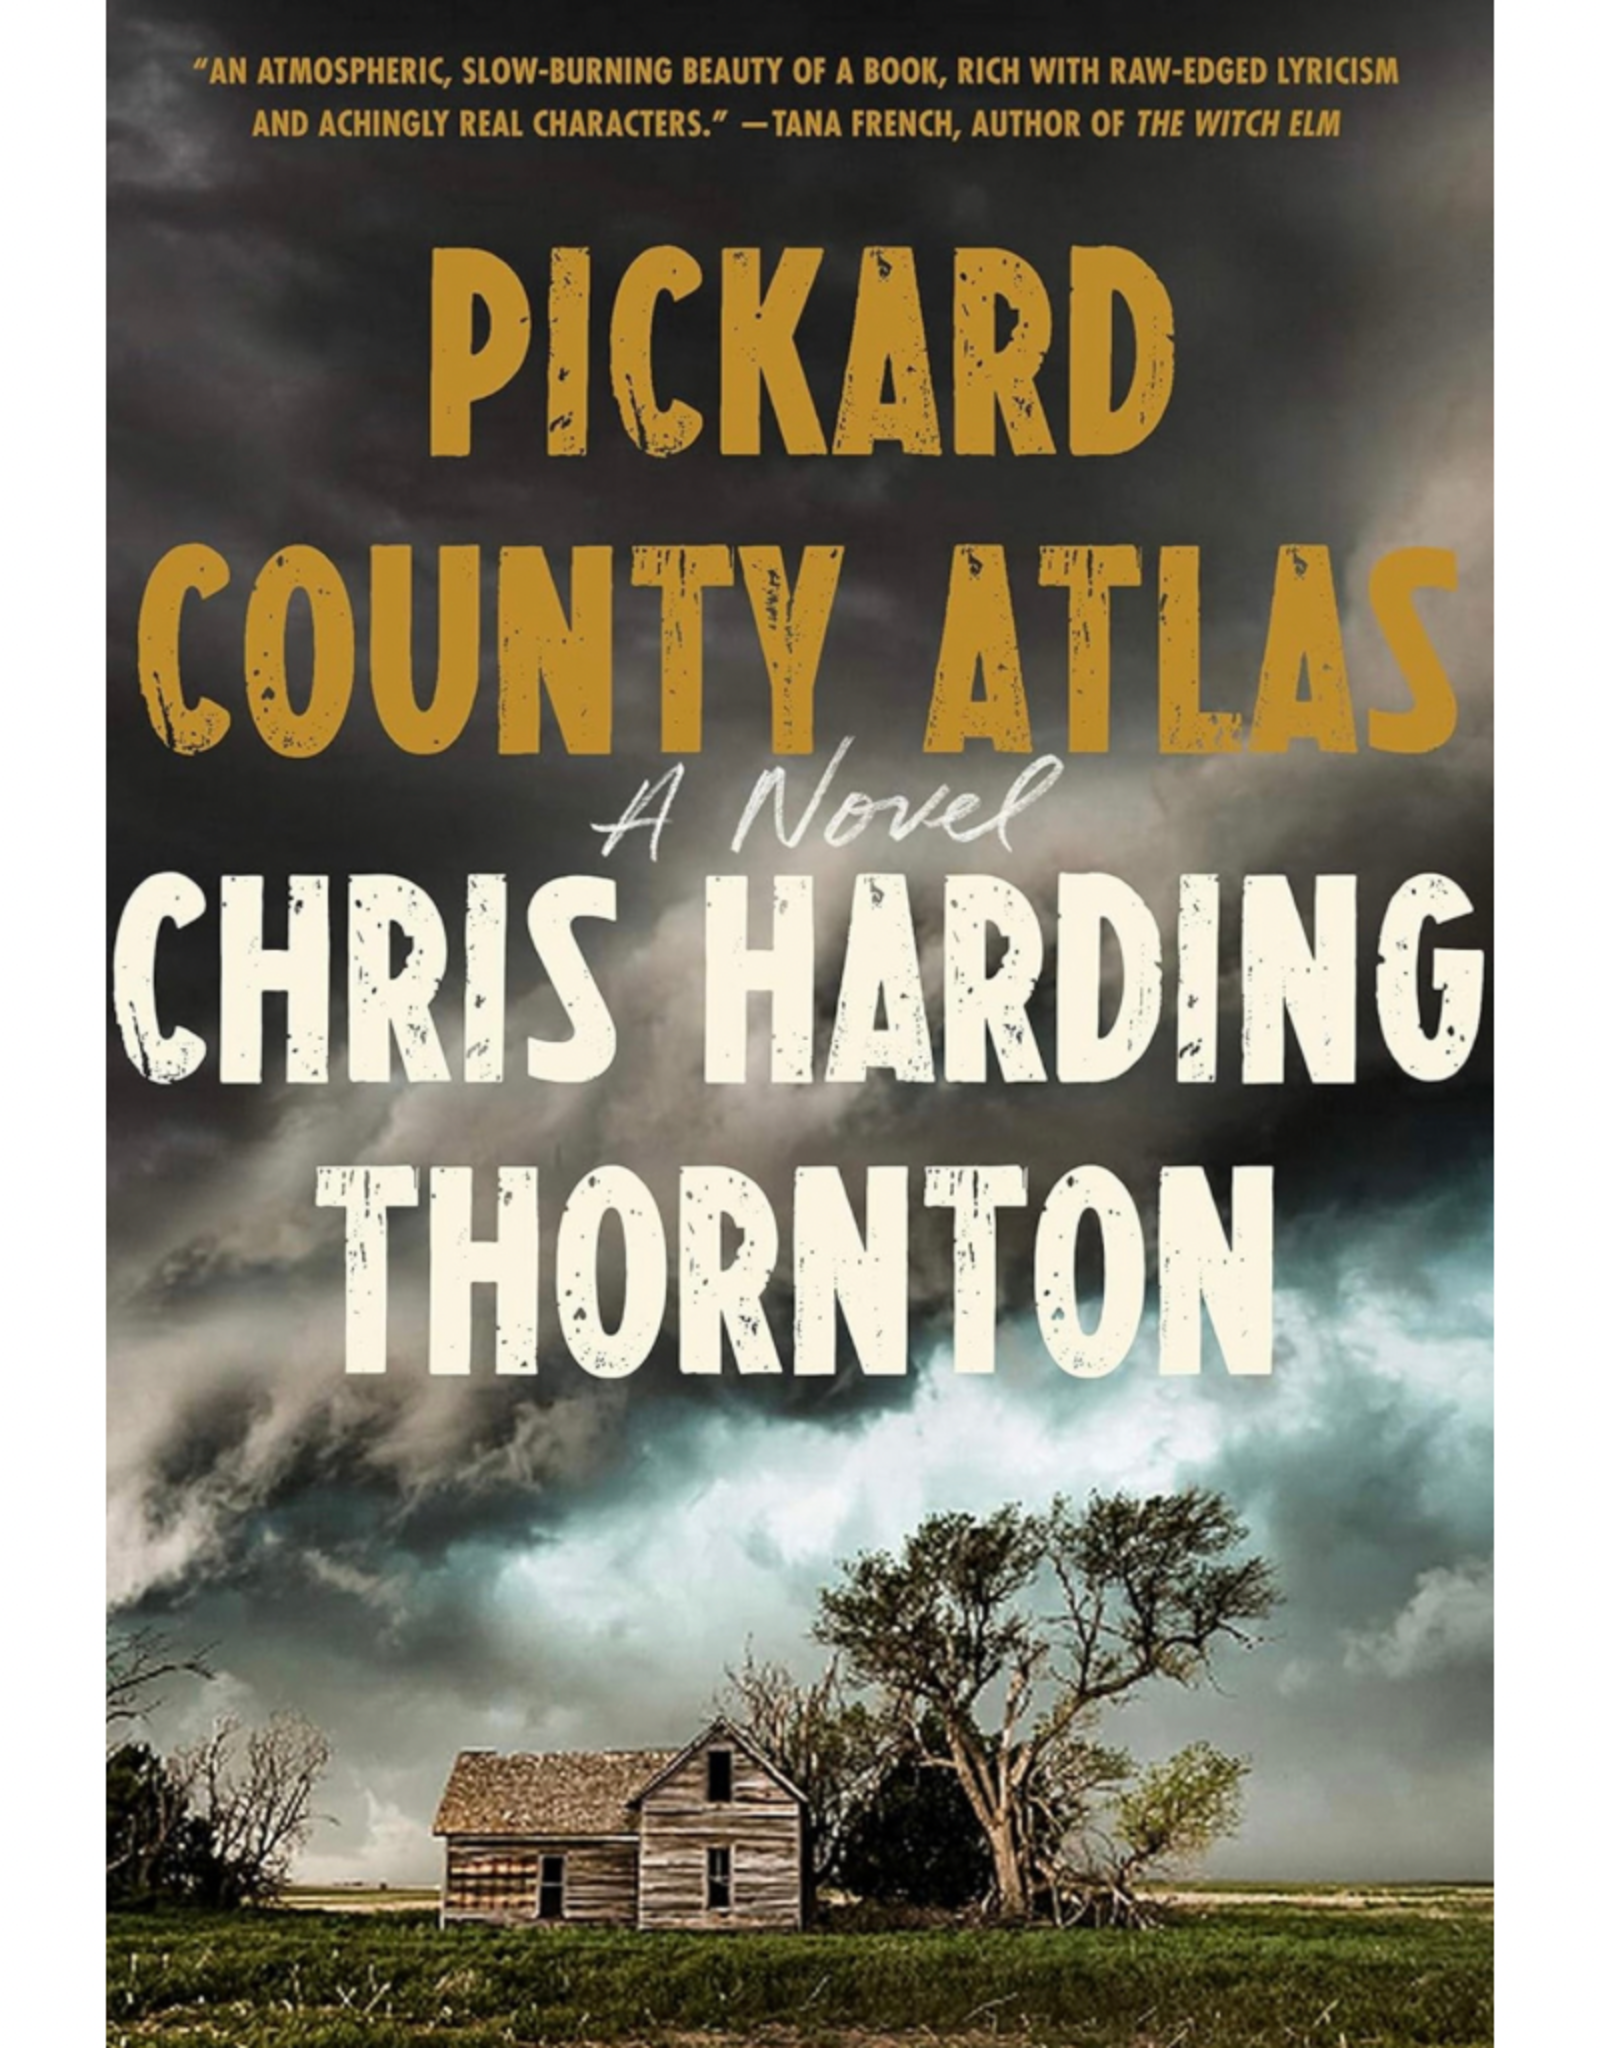 Pickard County Atlas (Hardcover)